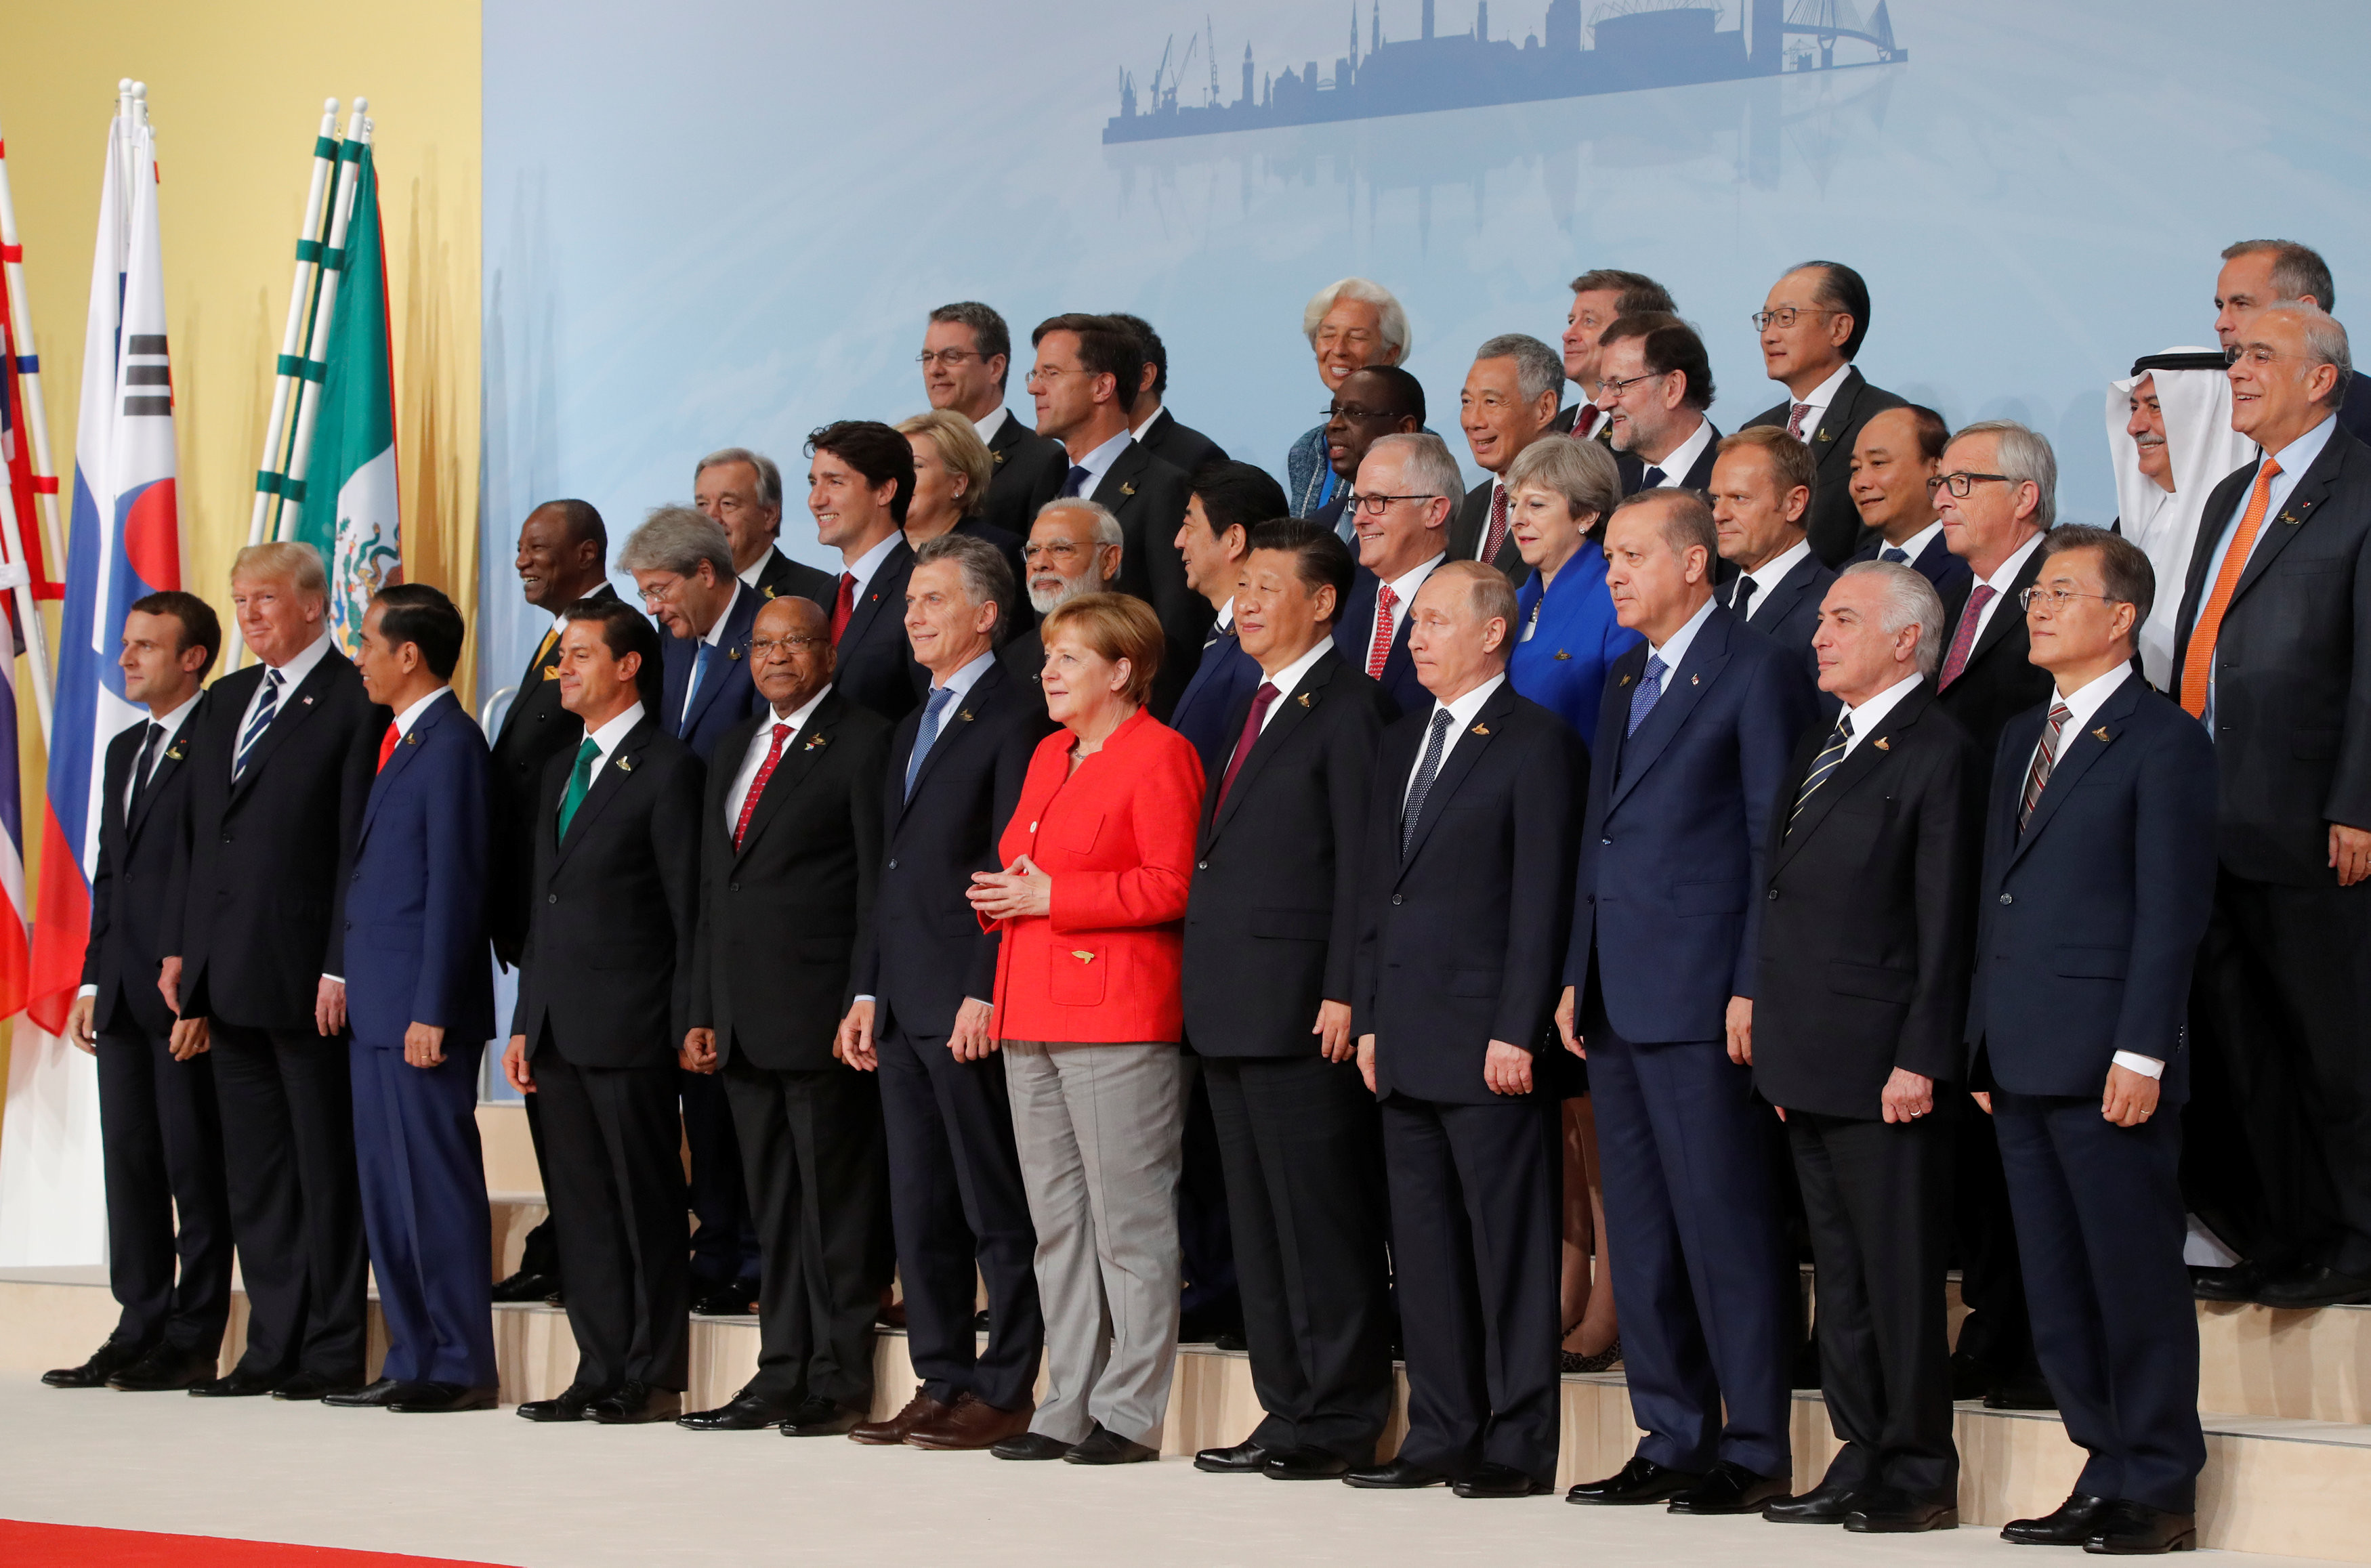 Видео саммита. G20 Summit. Саммит g20 2017. Саммит Джи 20.